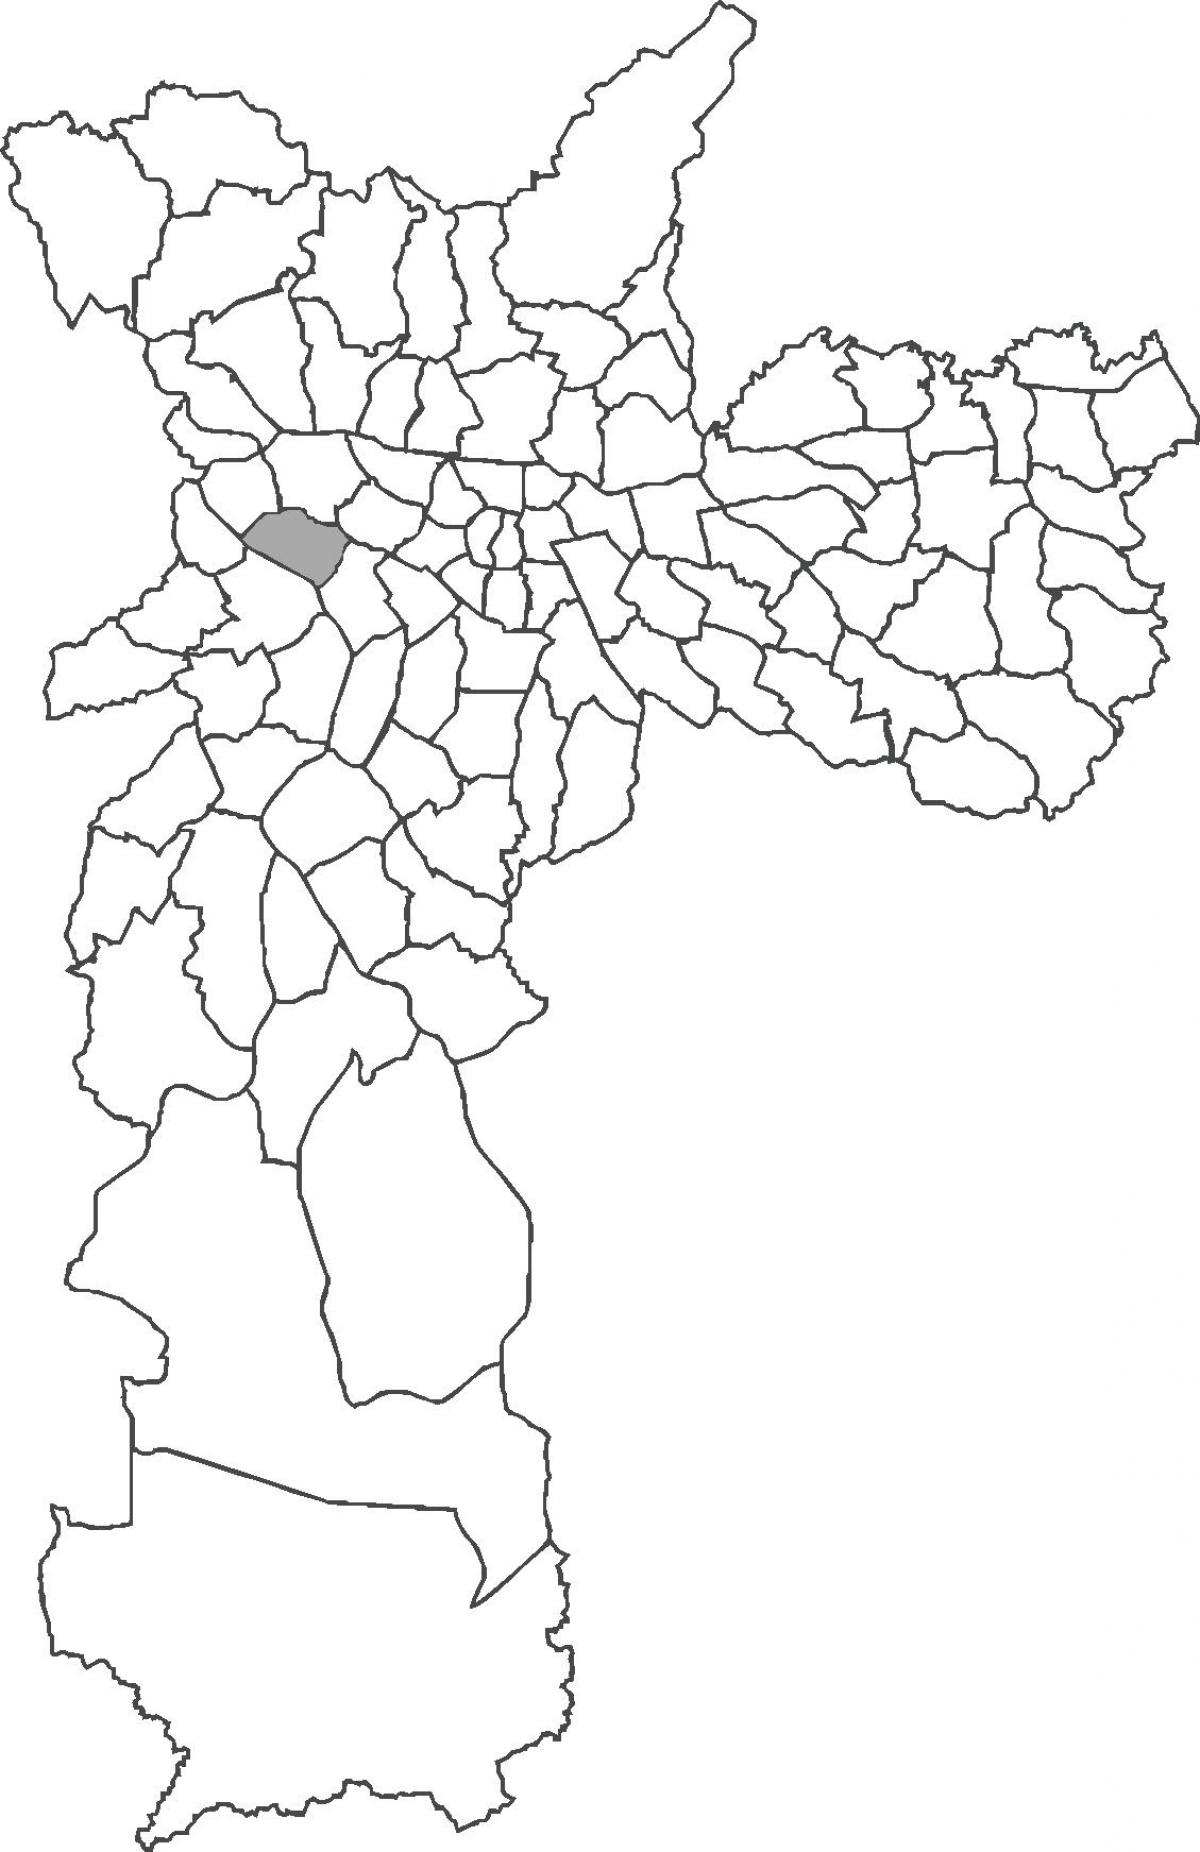 નકશો અલ્ટો દ Pinheiros જિલ્લા